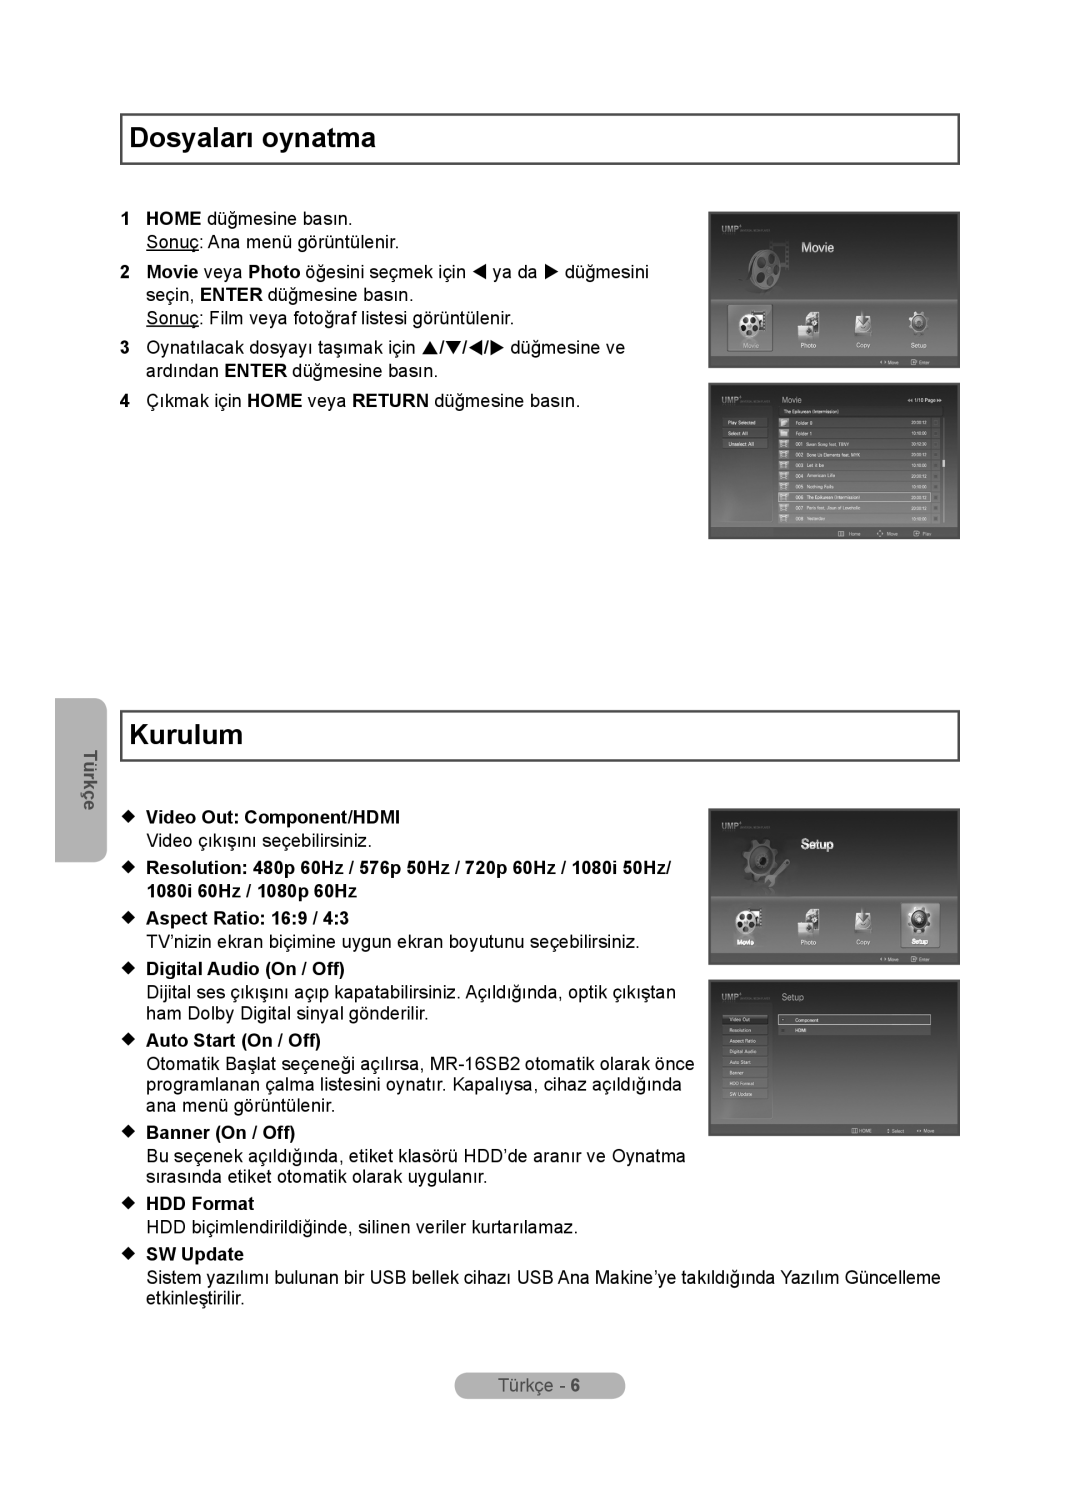 Samsung MR-16SB2 Dosyaları oynatma, Kurulum, Türkçe,  Video Out Component/HDMI,  Aspect Ratio 169,  Auto Start On / Off 